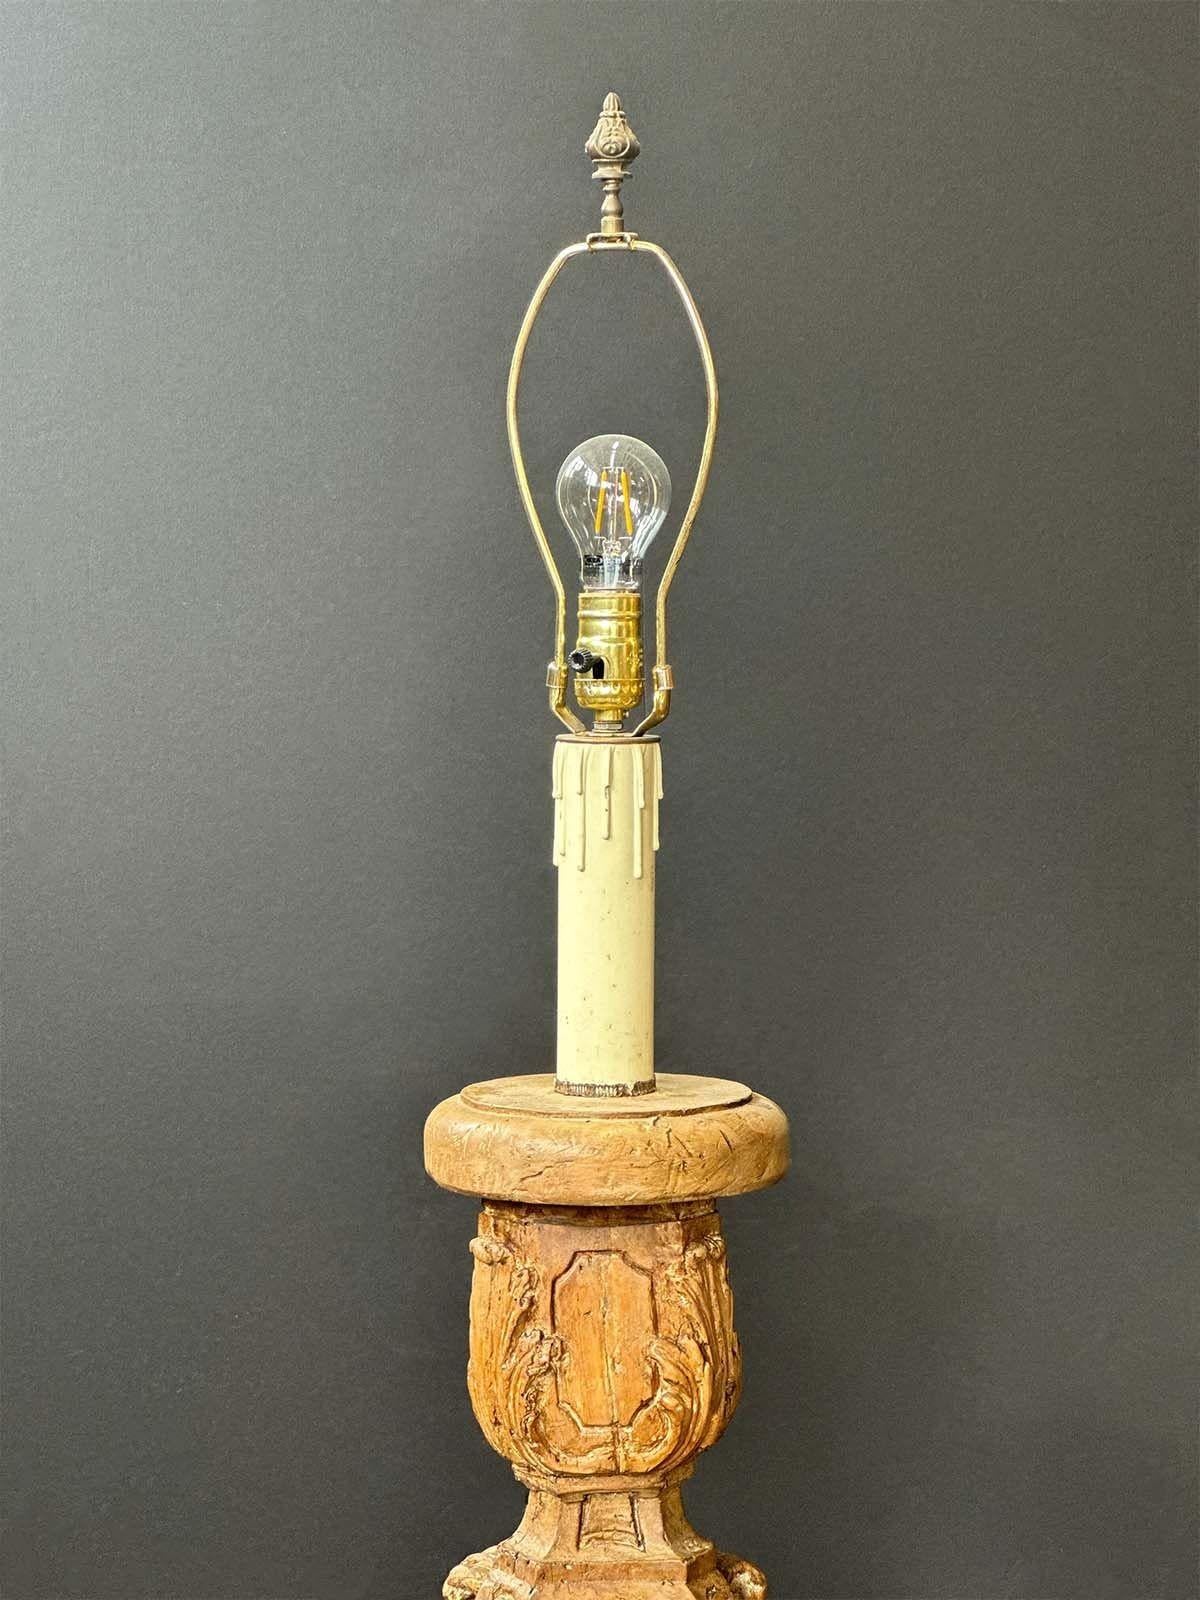 Wunderschöne handgeschnitzte italienische Stehlampe aus dem 18. Jahrhundert. UL-gelistet (neu verdrahtet, um den US-Normen zu entsprechen). 
Abmessungen:
76,5 